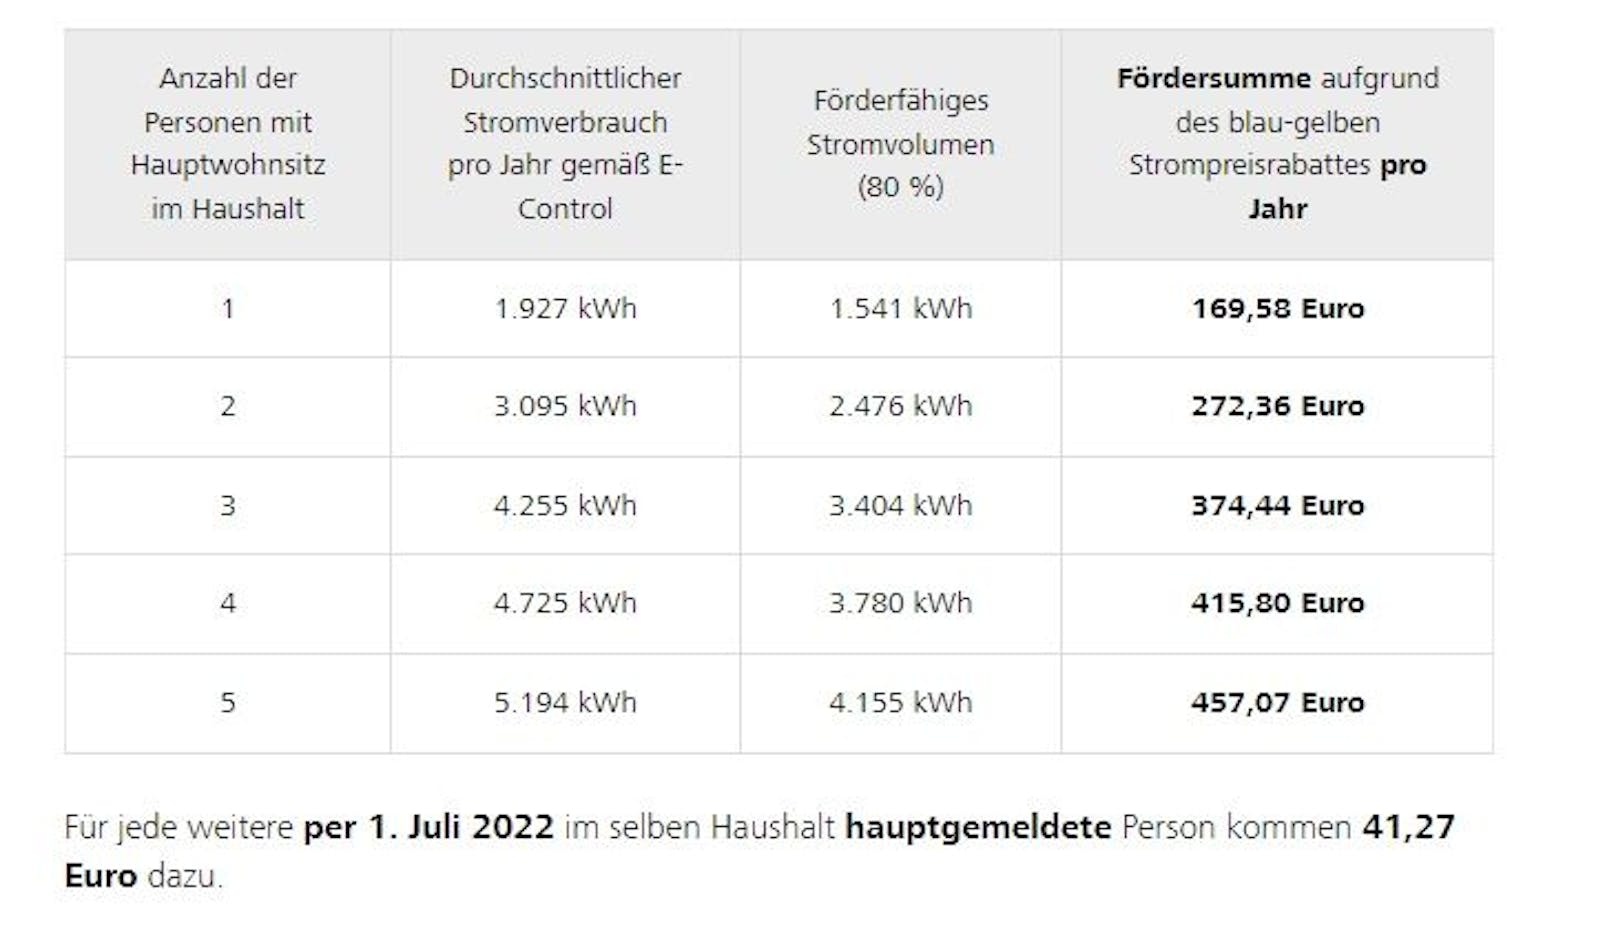 Strompreisrabatt in NÖ: So viel bekommen EVN-Kunden zurück